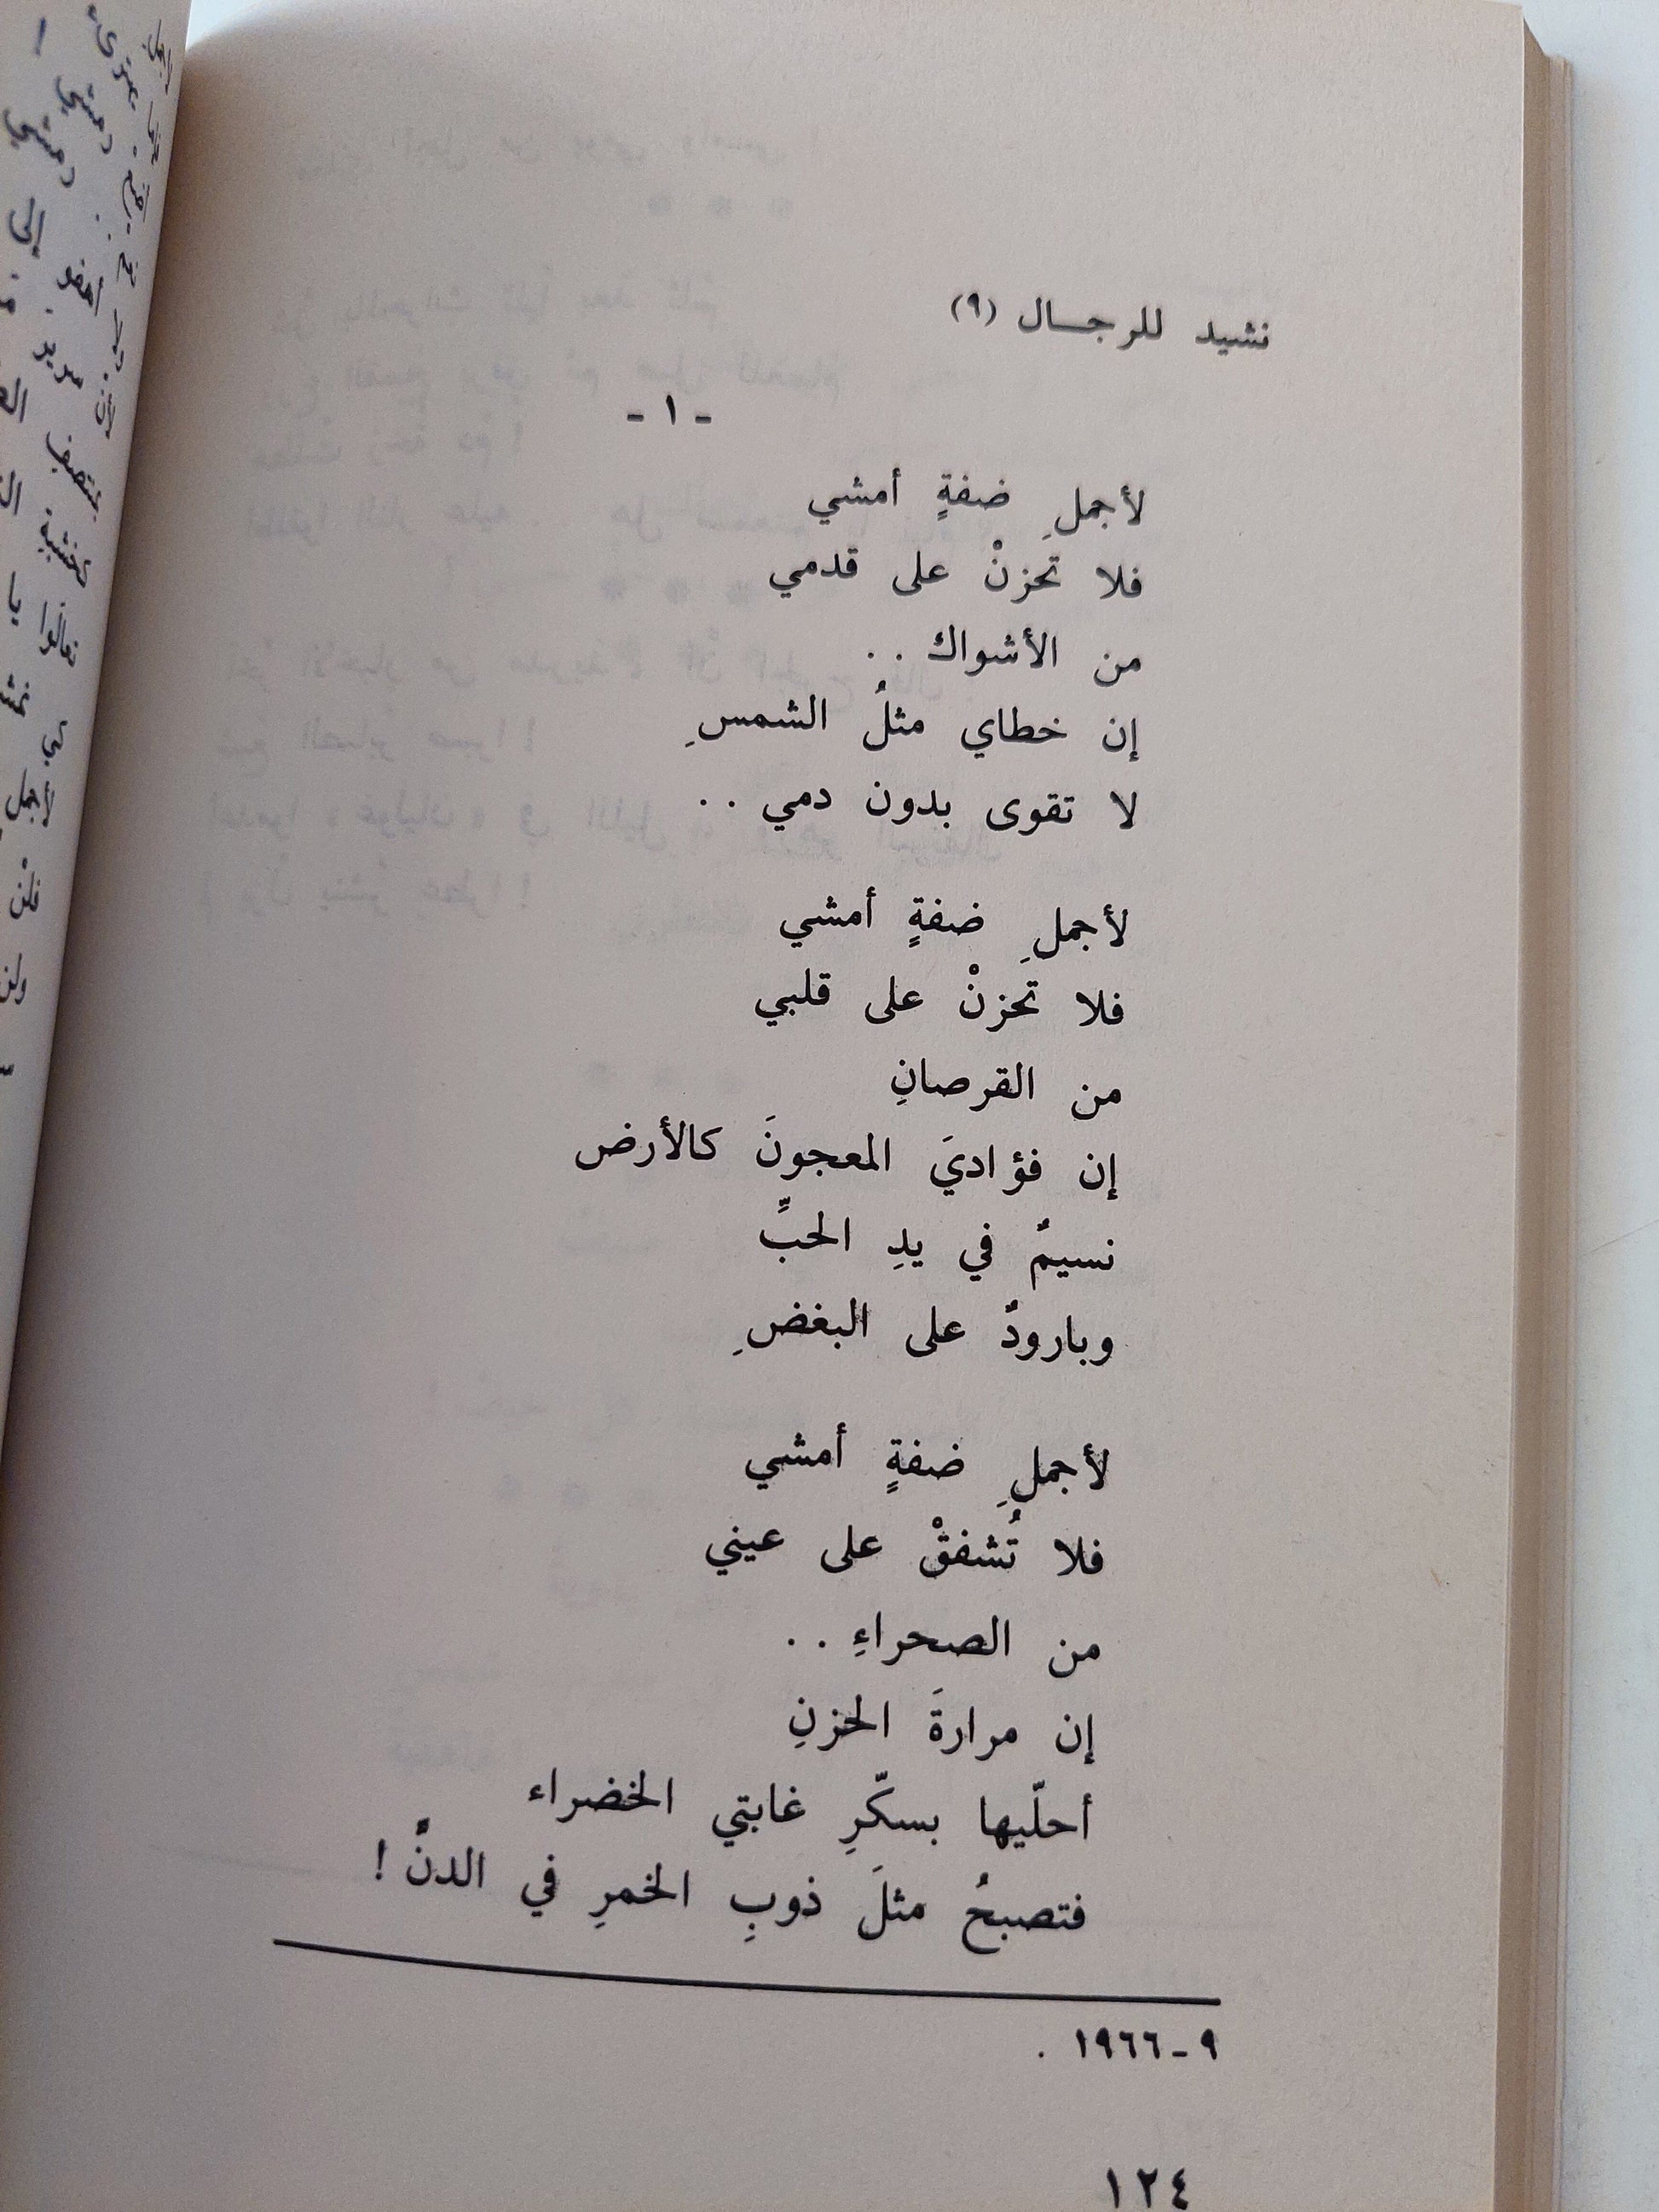 الأدب الفلسطيني المقاوم تحت الإحتلال 1948 - 1968 / غسان كنفاني كتاب المكتبة الفلسفية 